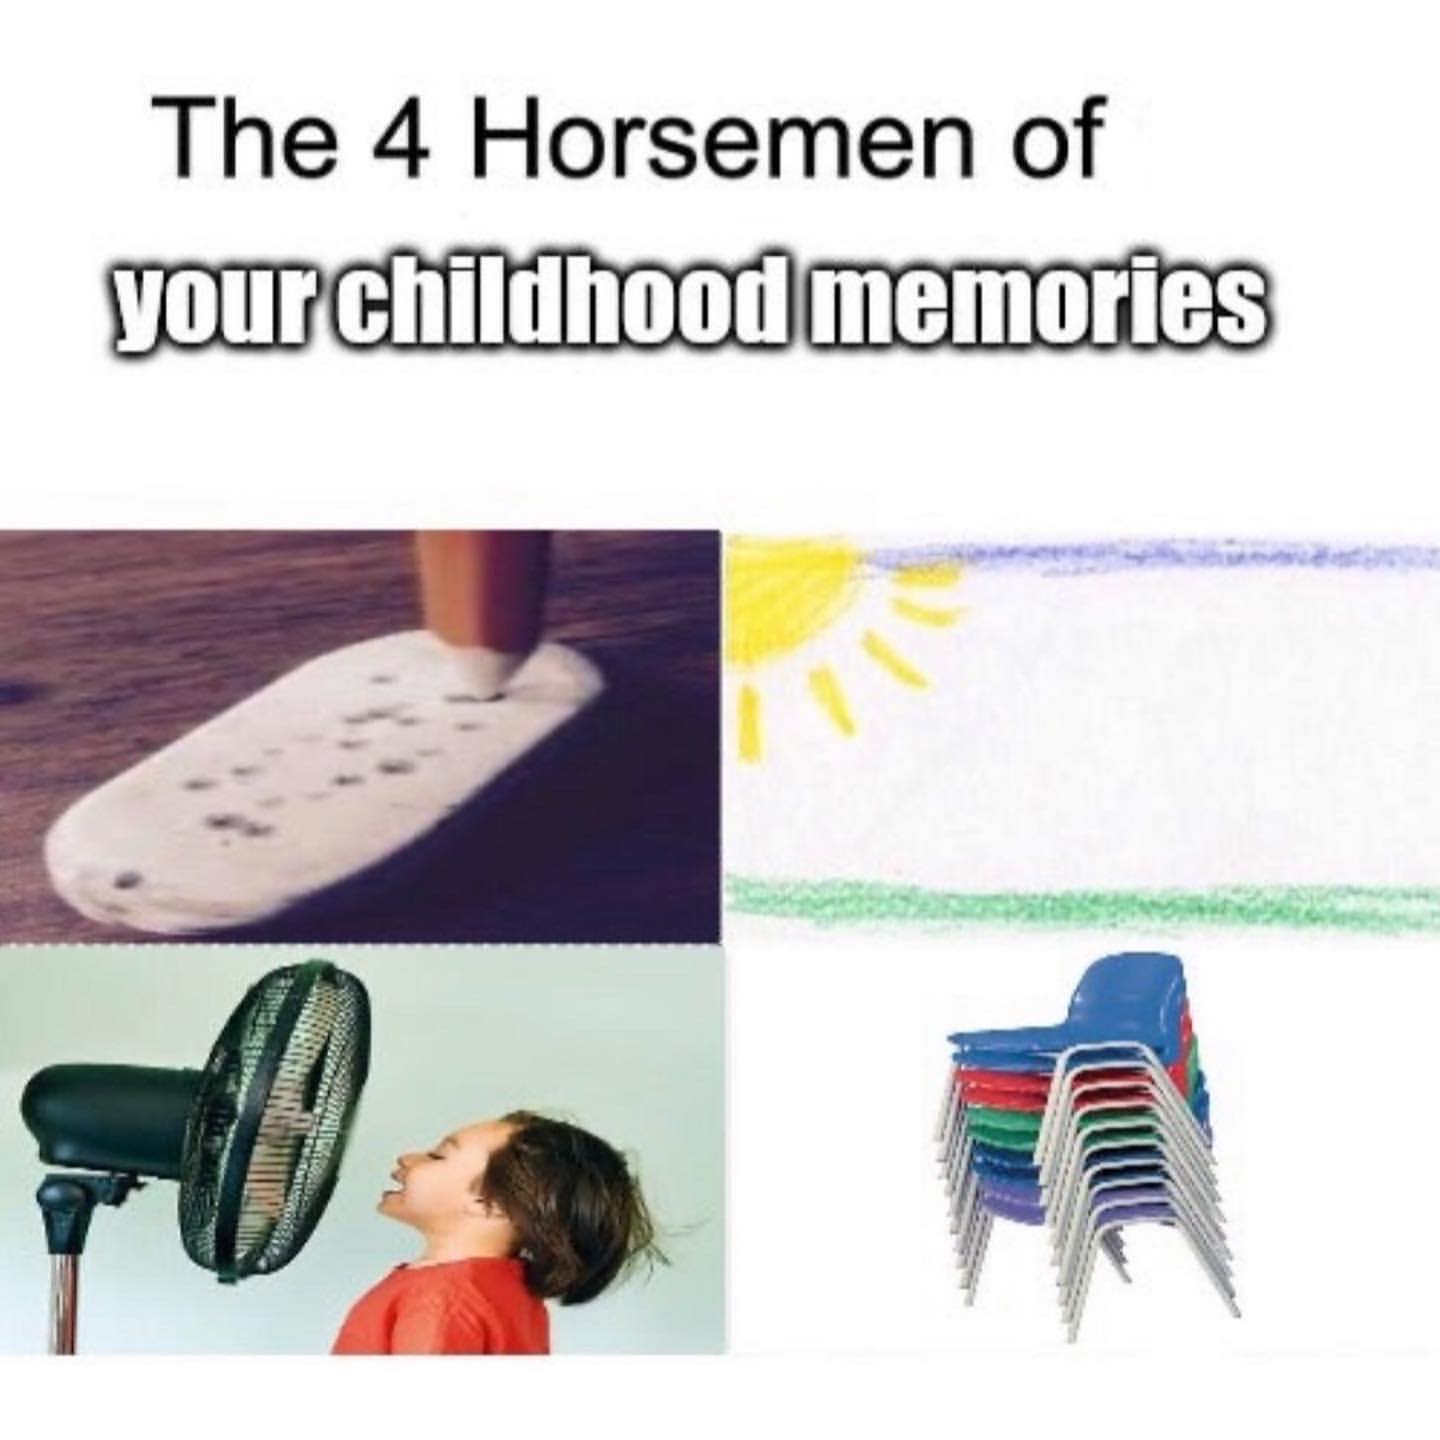 The 4 Horsemen of your childhood memories.